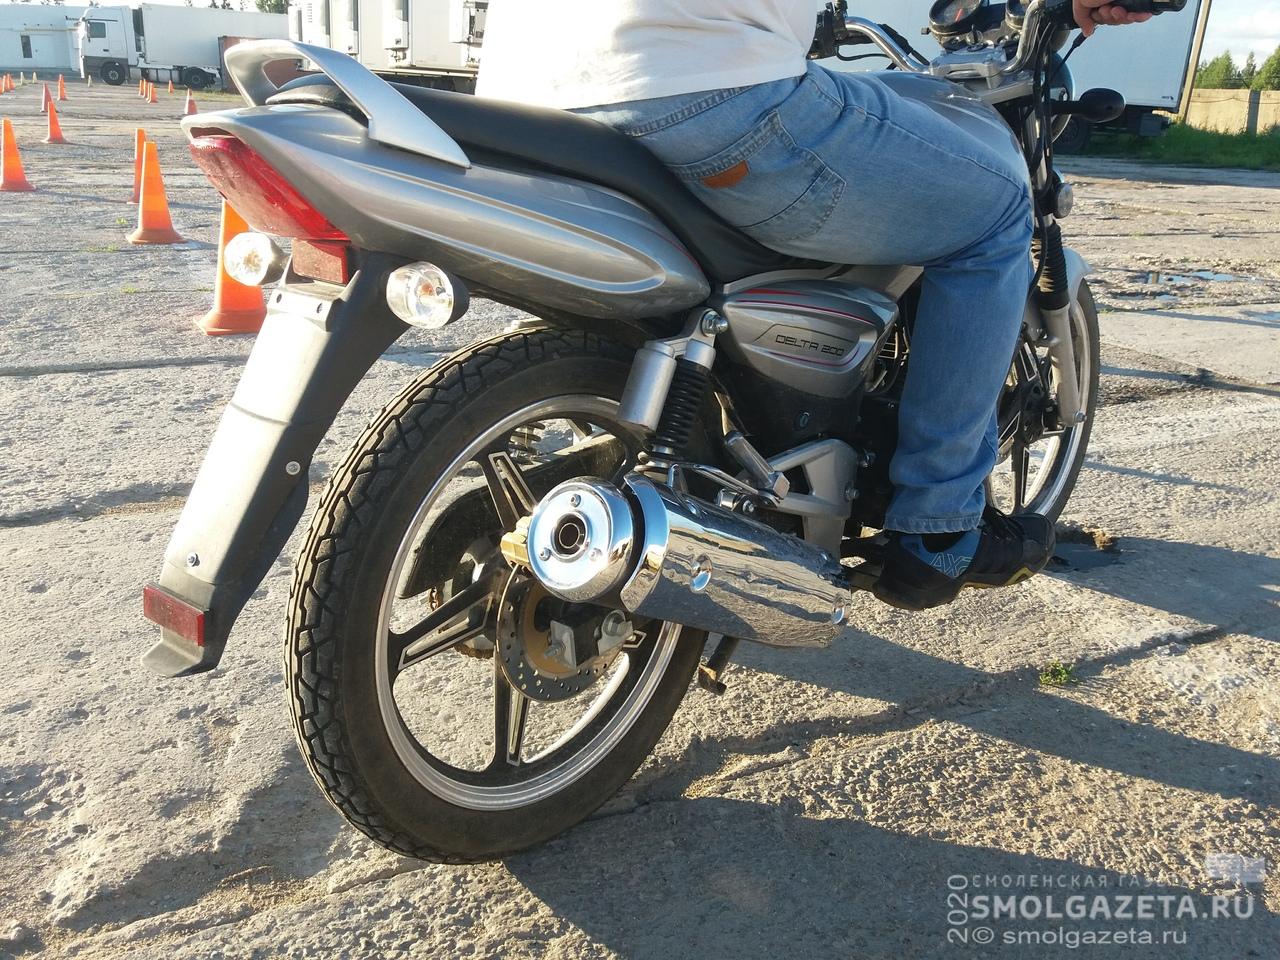 В Смоленской области мотоциклист столкнулся с иномаркой